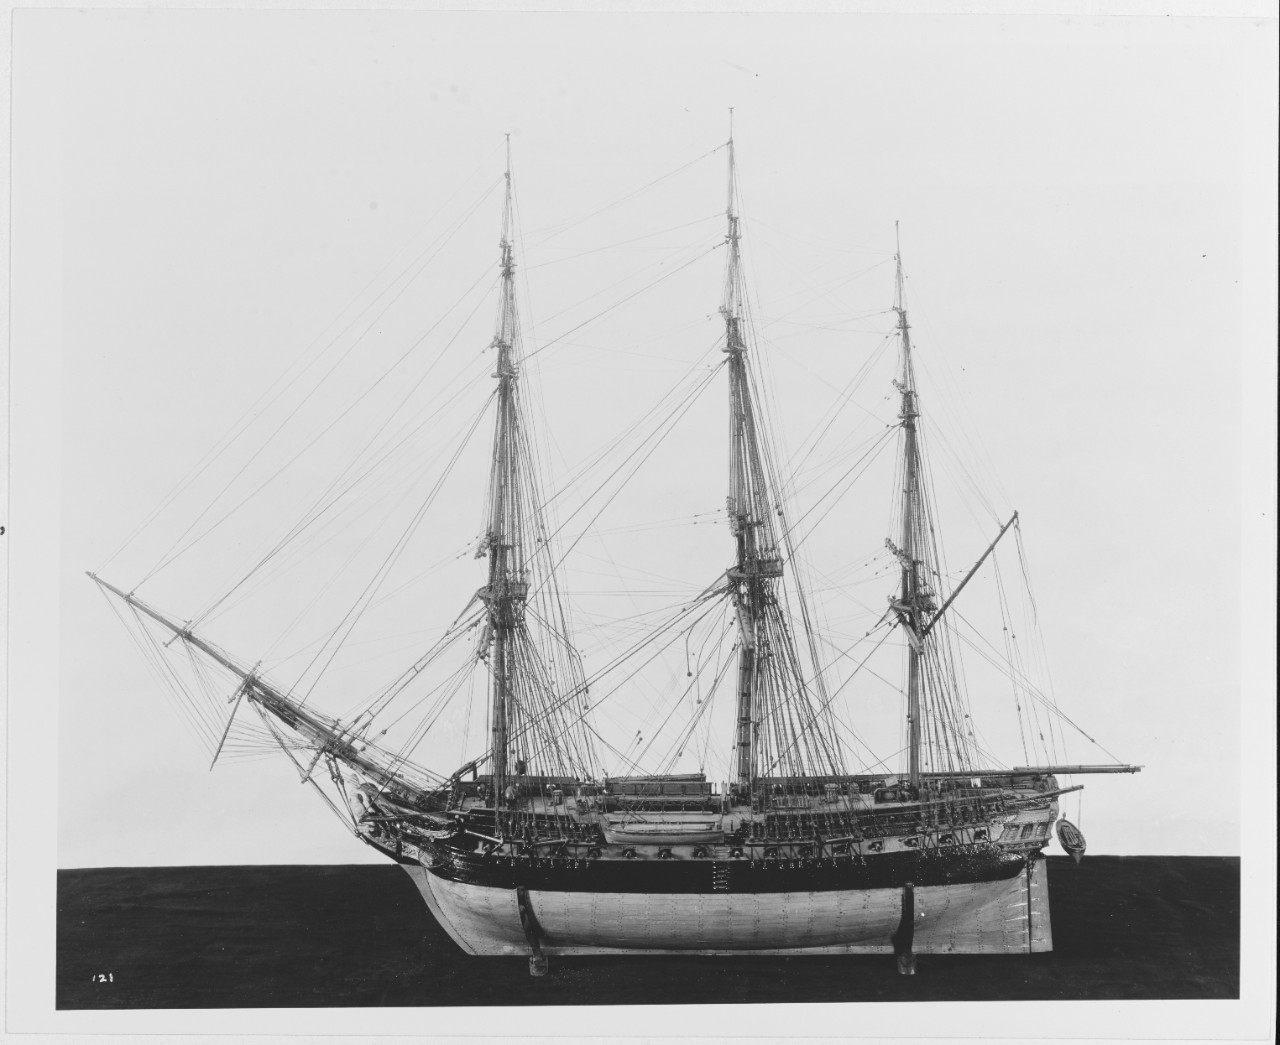 HMS SHANNON